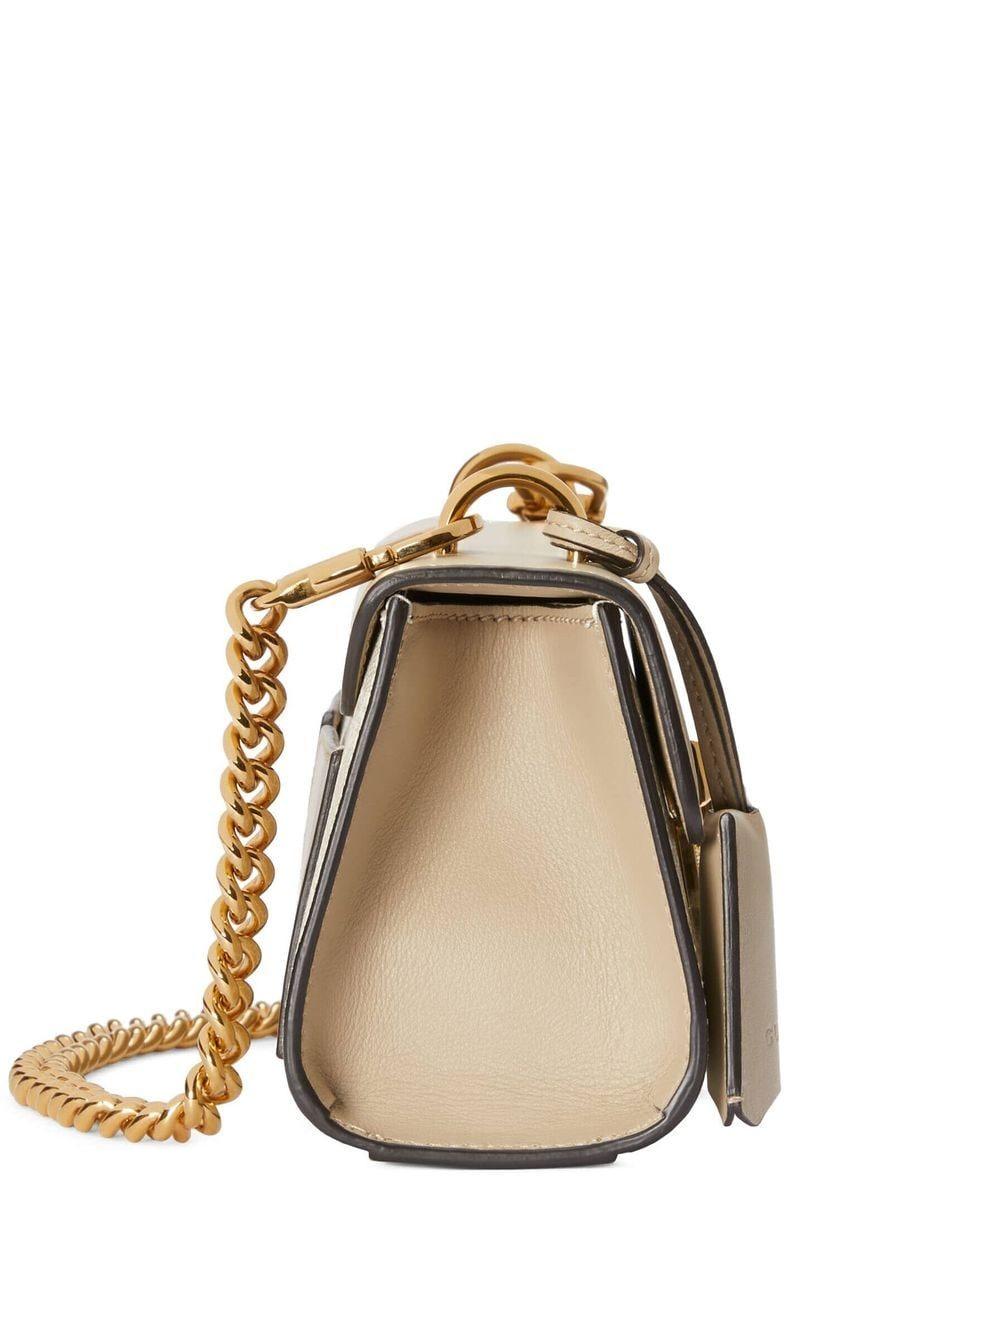 Gucci Padlock mini bag Vs GG Marmont supermini bag